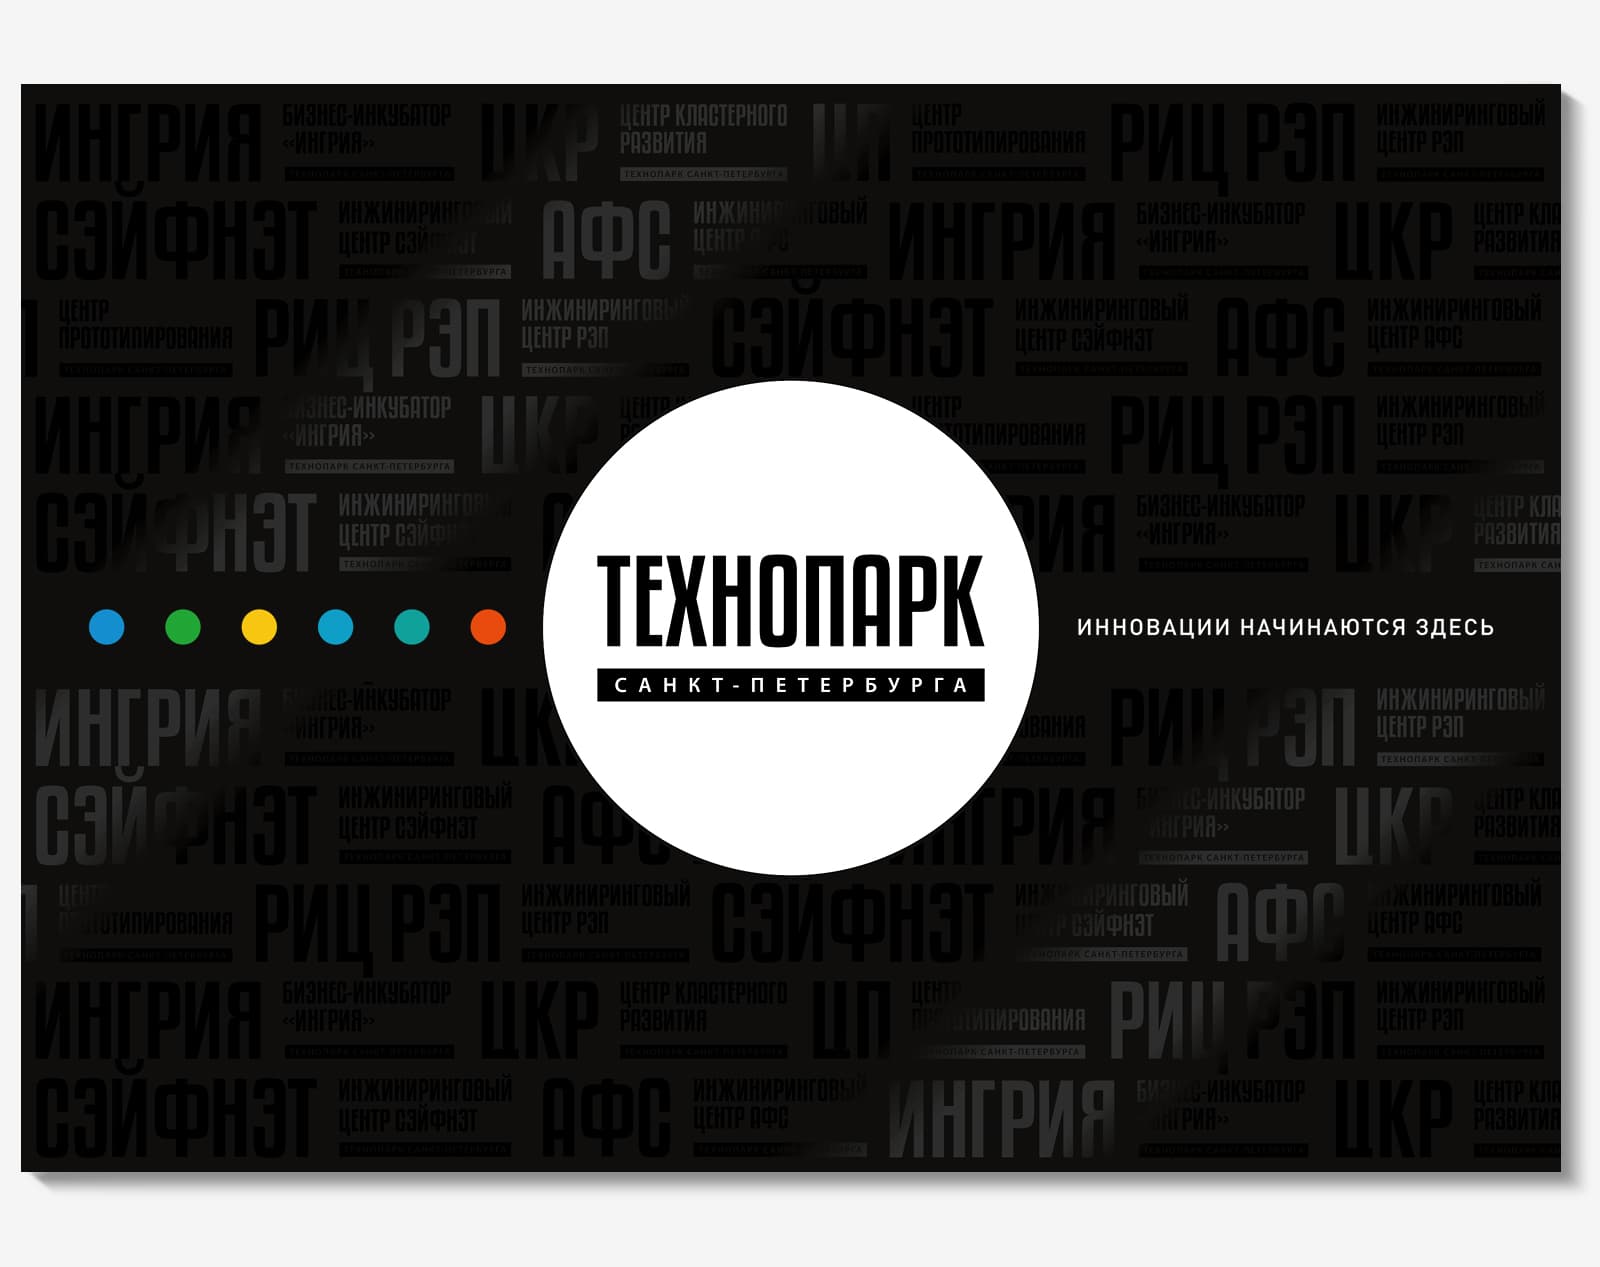 Сделали дизайн рекламной брошюры для АО «Технопарк Санкт-Петербурга»